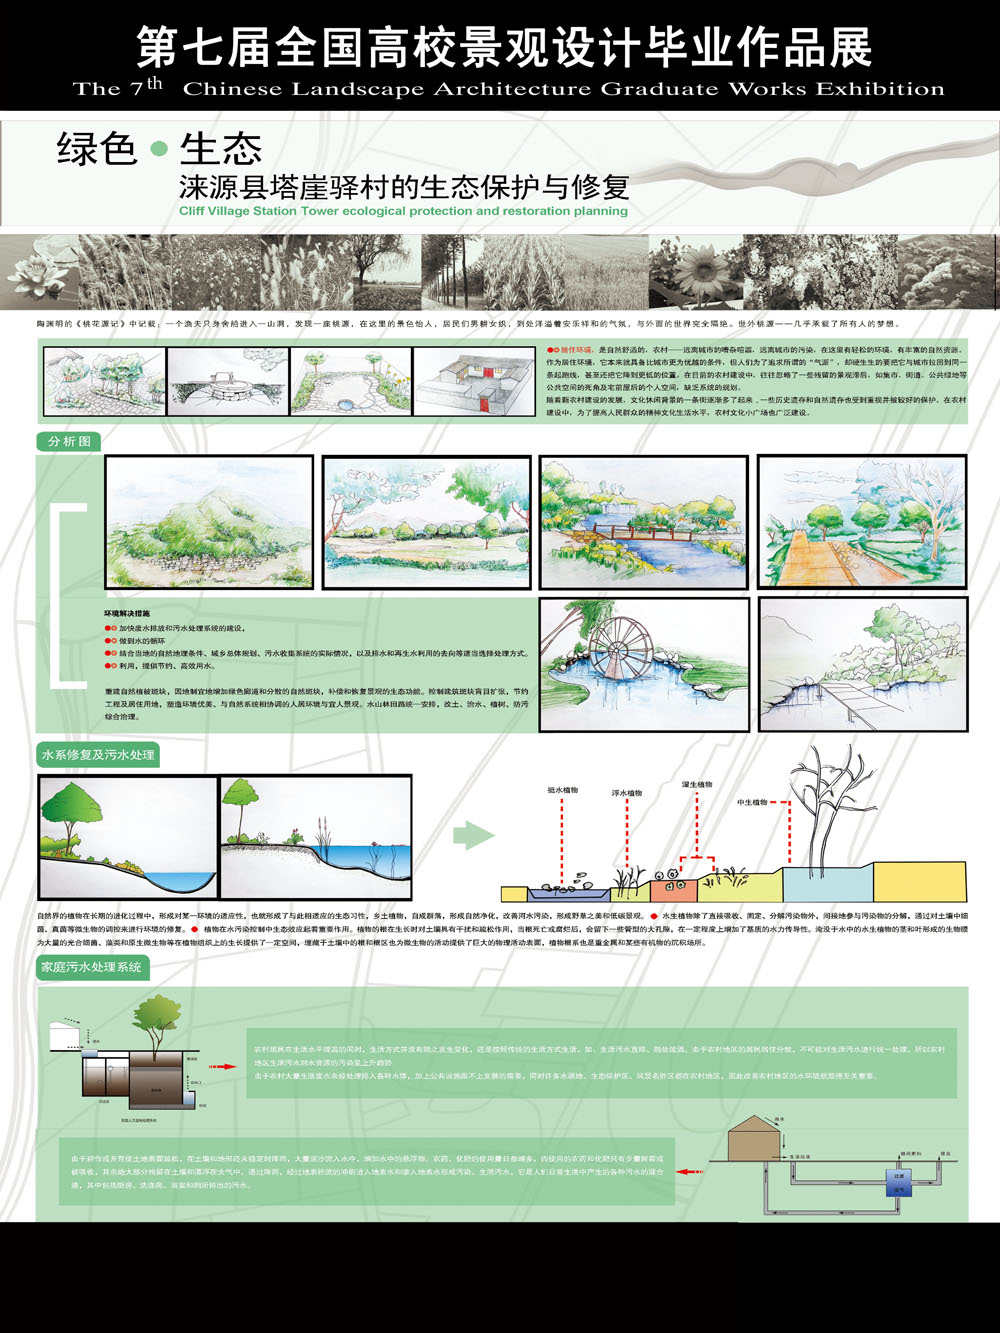 塔崖驿村的生态保护与修复规划-2